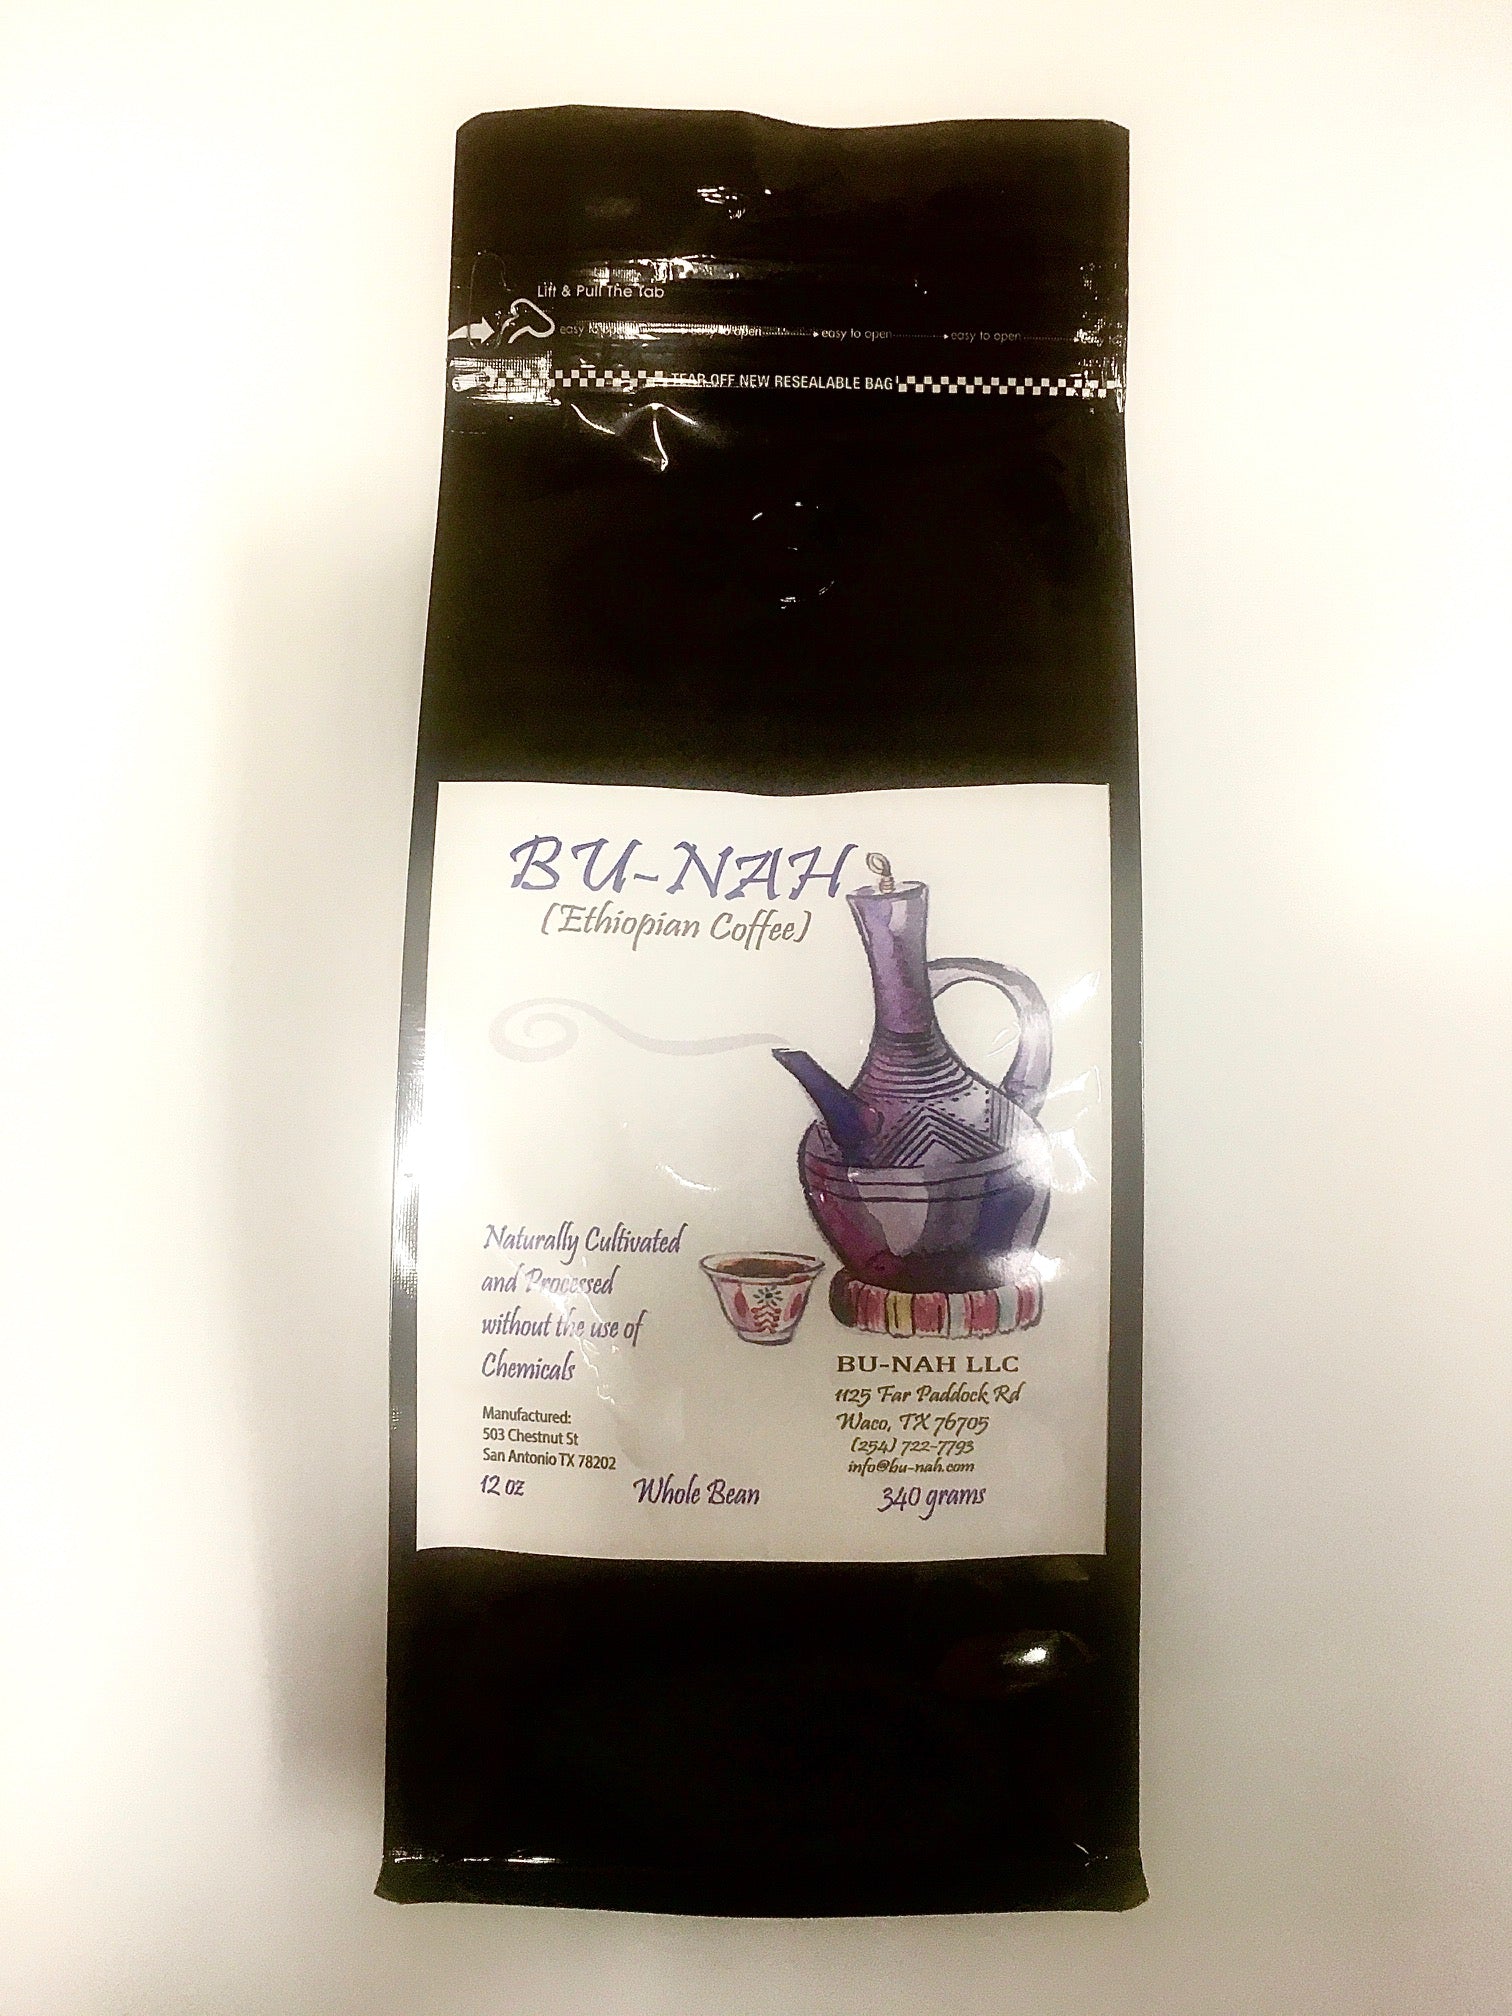 Bu-nah — Authentic, Artisan-Roasted Ethiopian Coffee (Whole Bean, 12 oz)